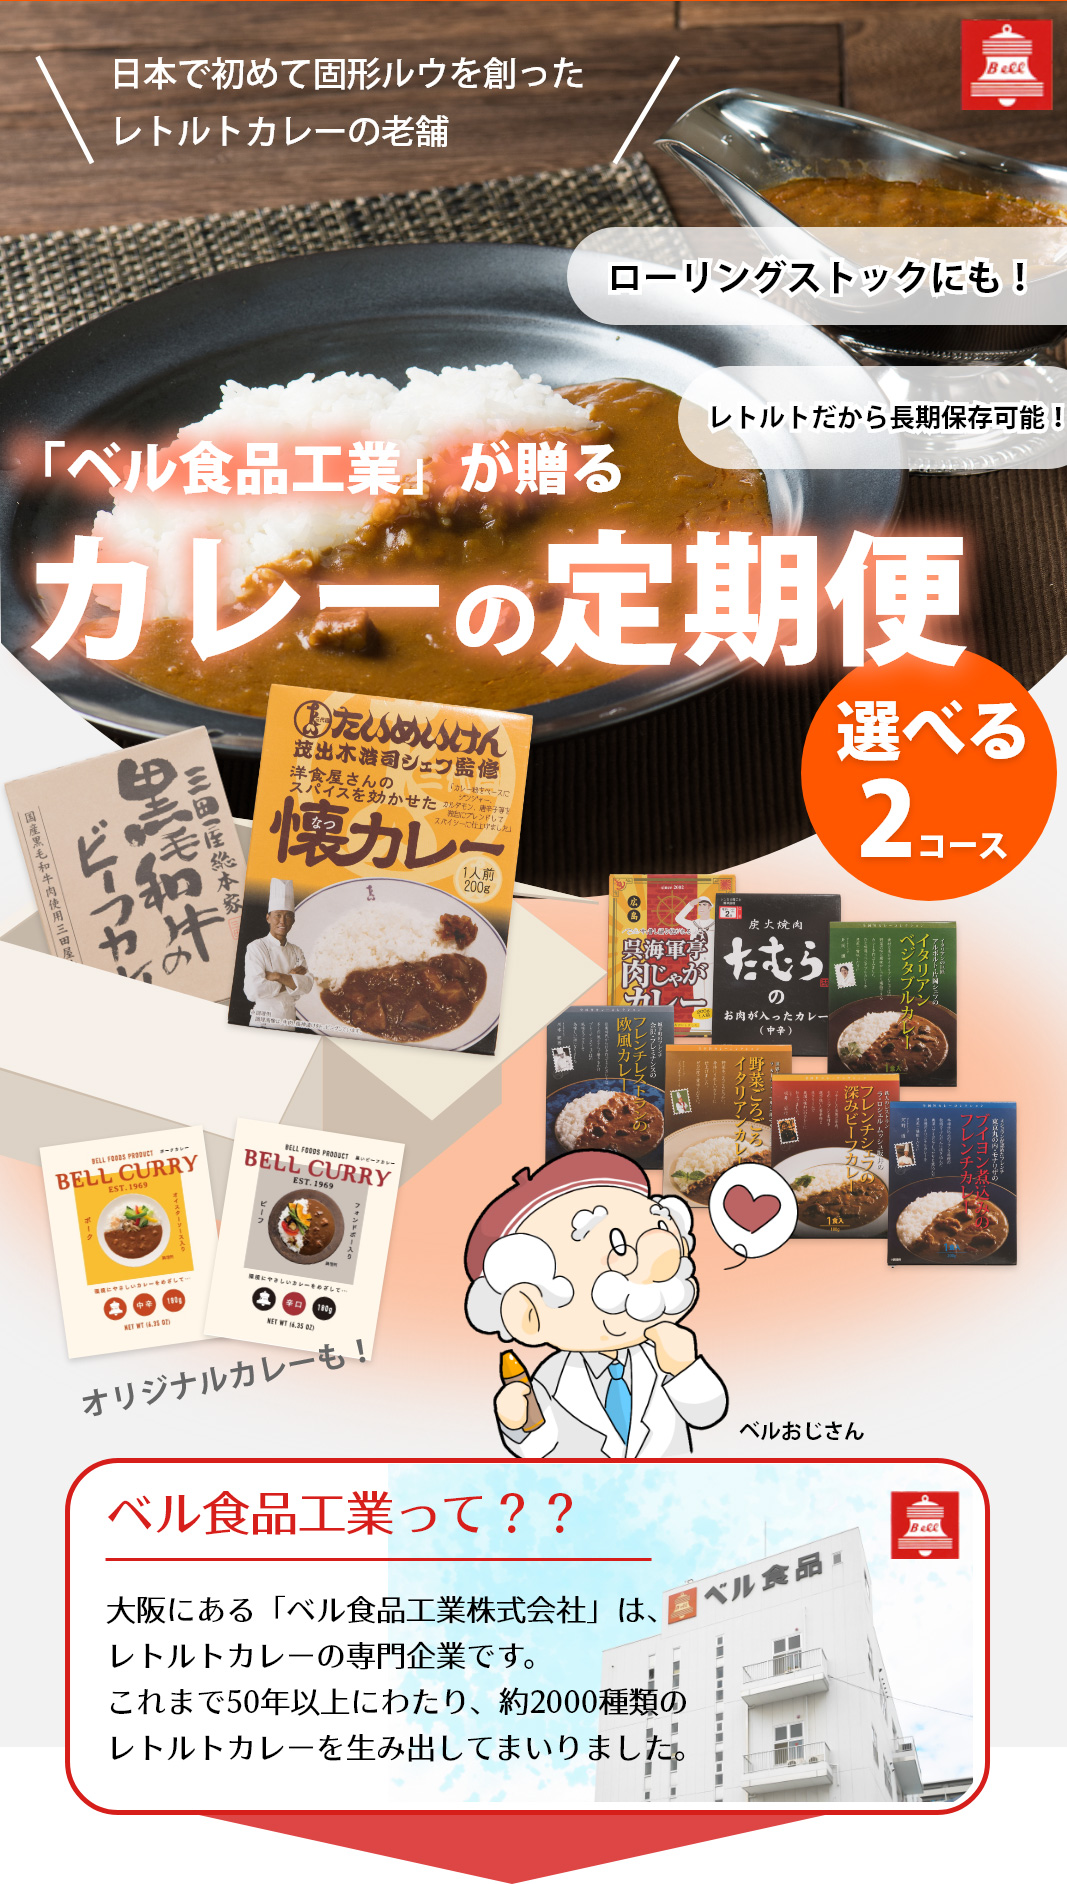 大阪にある「ベル食品工業株式会社」は、レトルトカレーの専門企業です。これまで50年以上にわたり、約2000種類のレトルトカレーを生み出してまいりました。